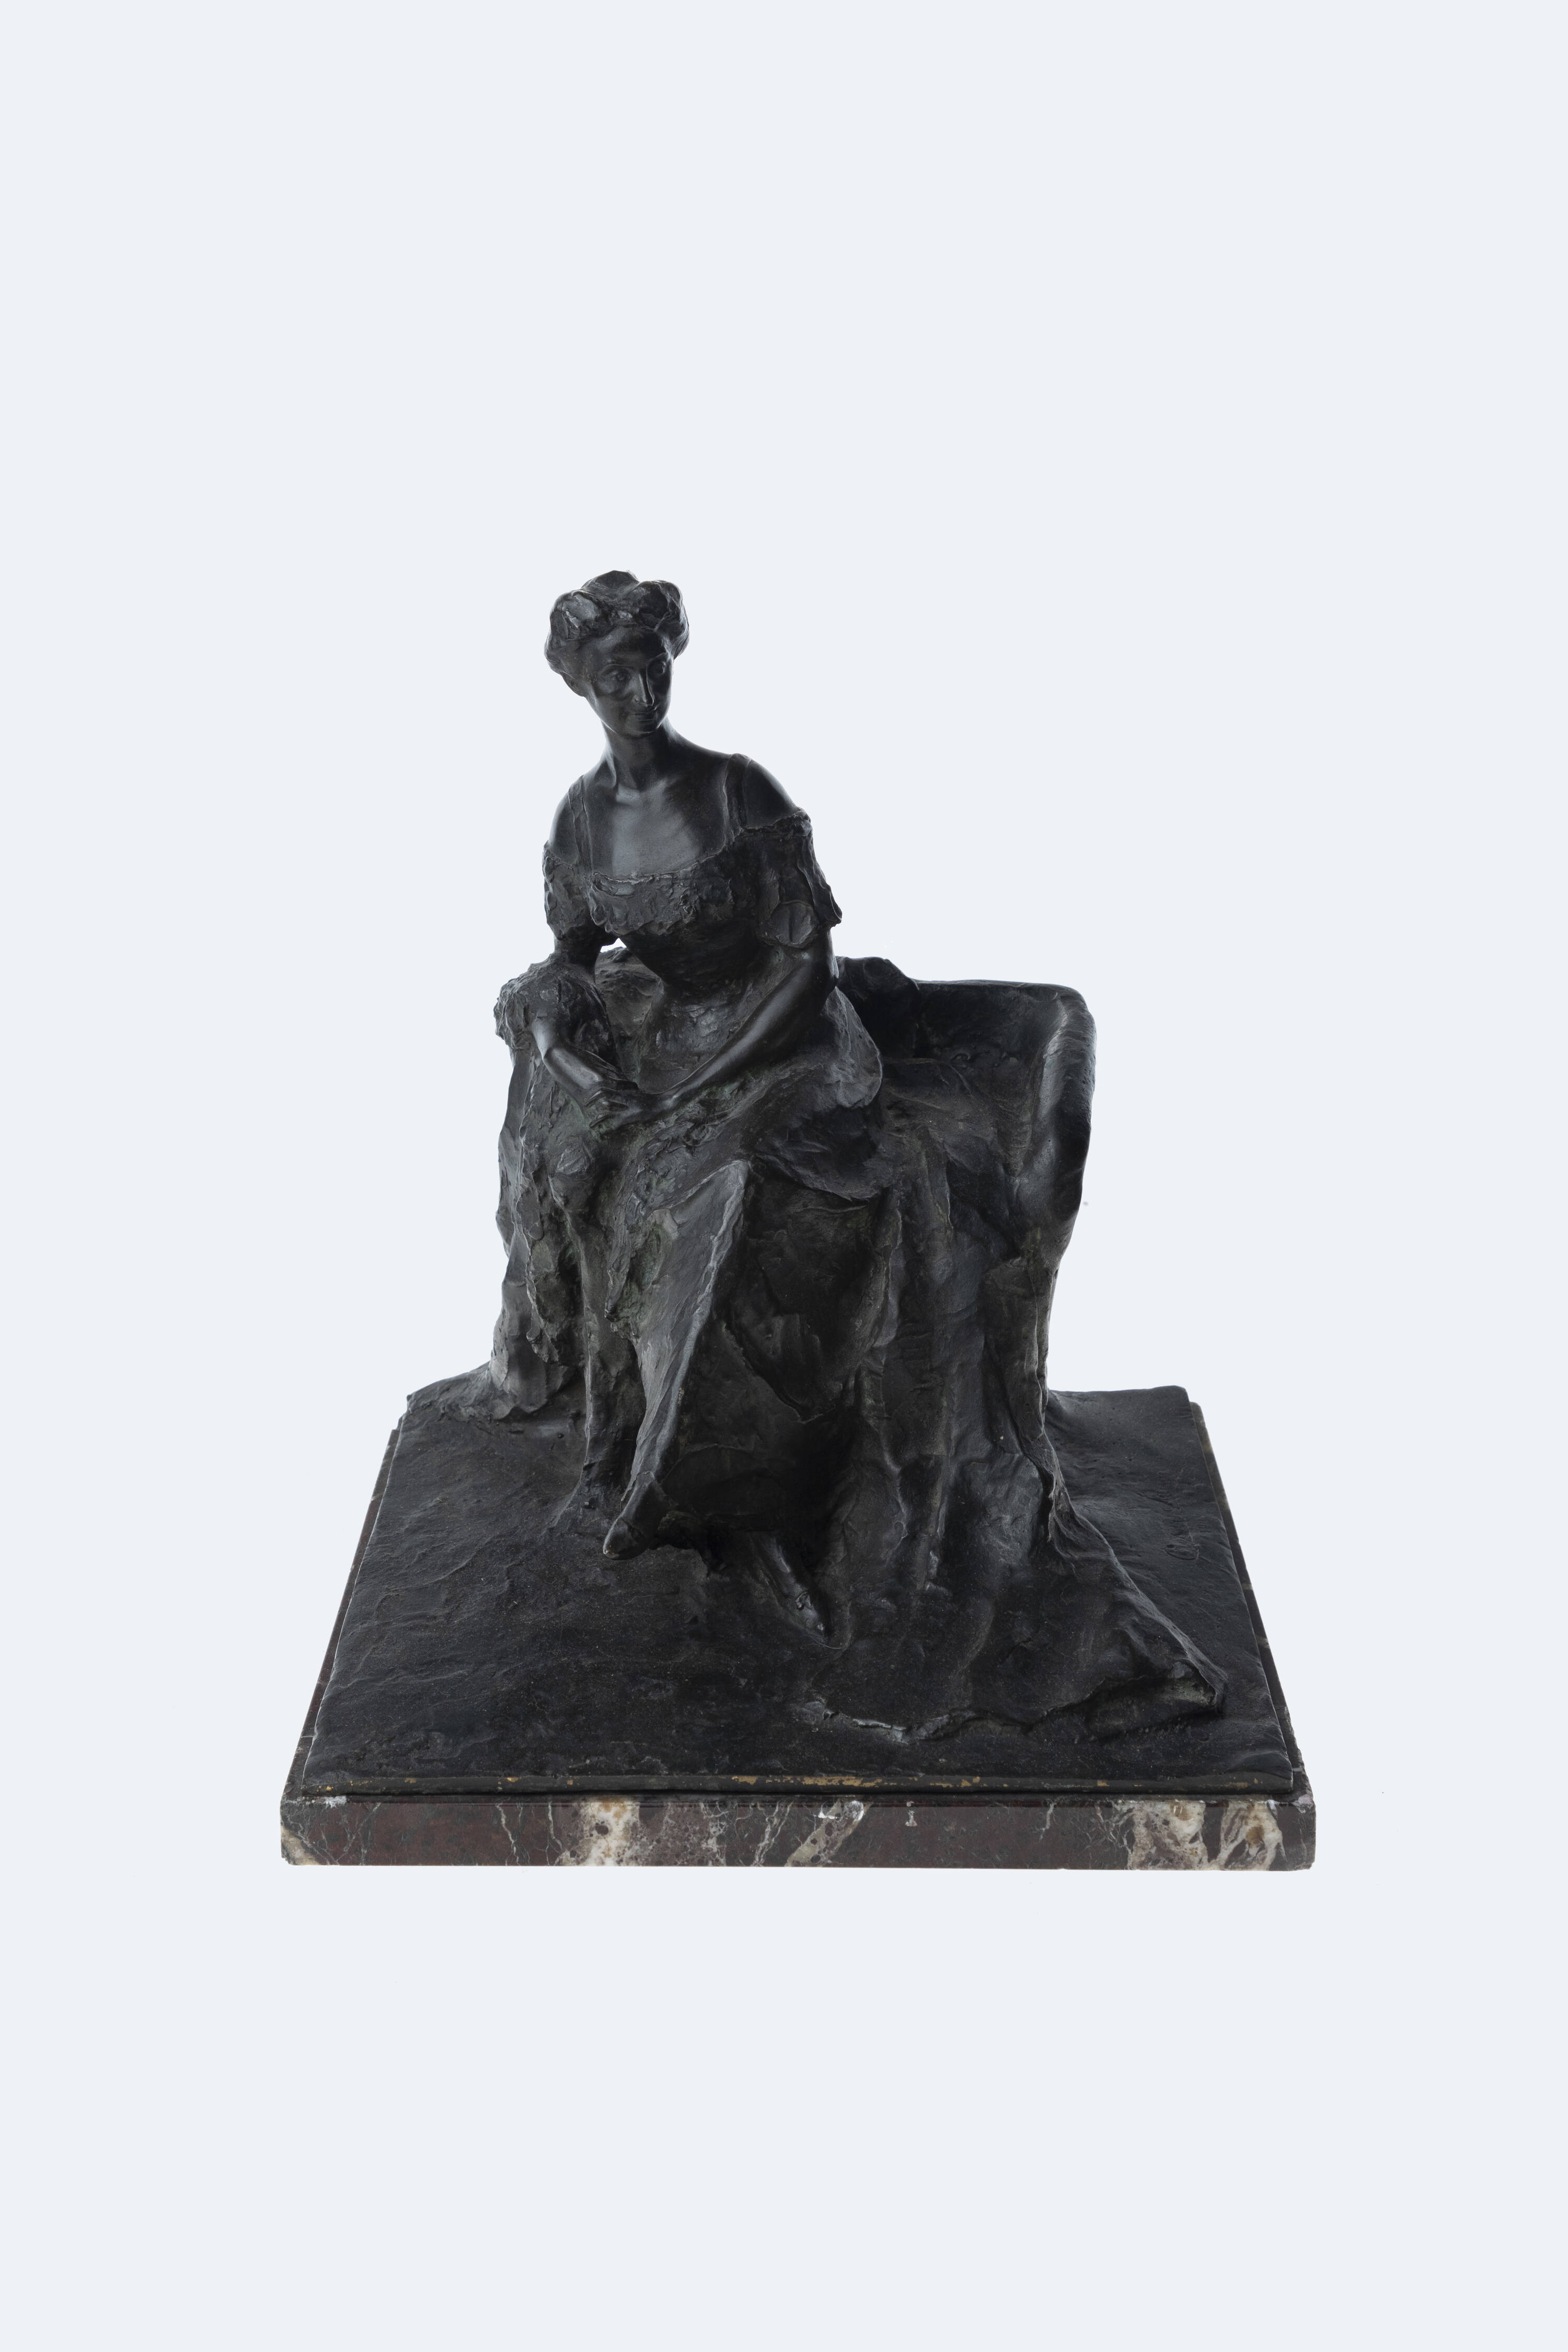 Santiano Cesar Ritratto della Dignora Terracini statua in bronzo